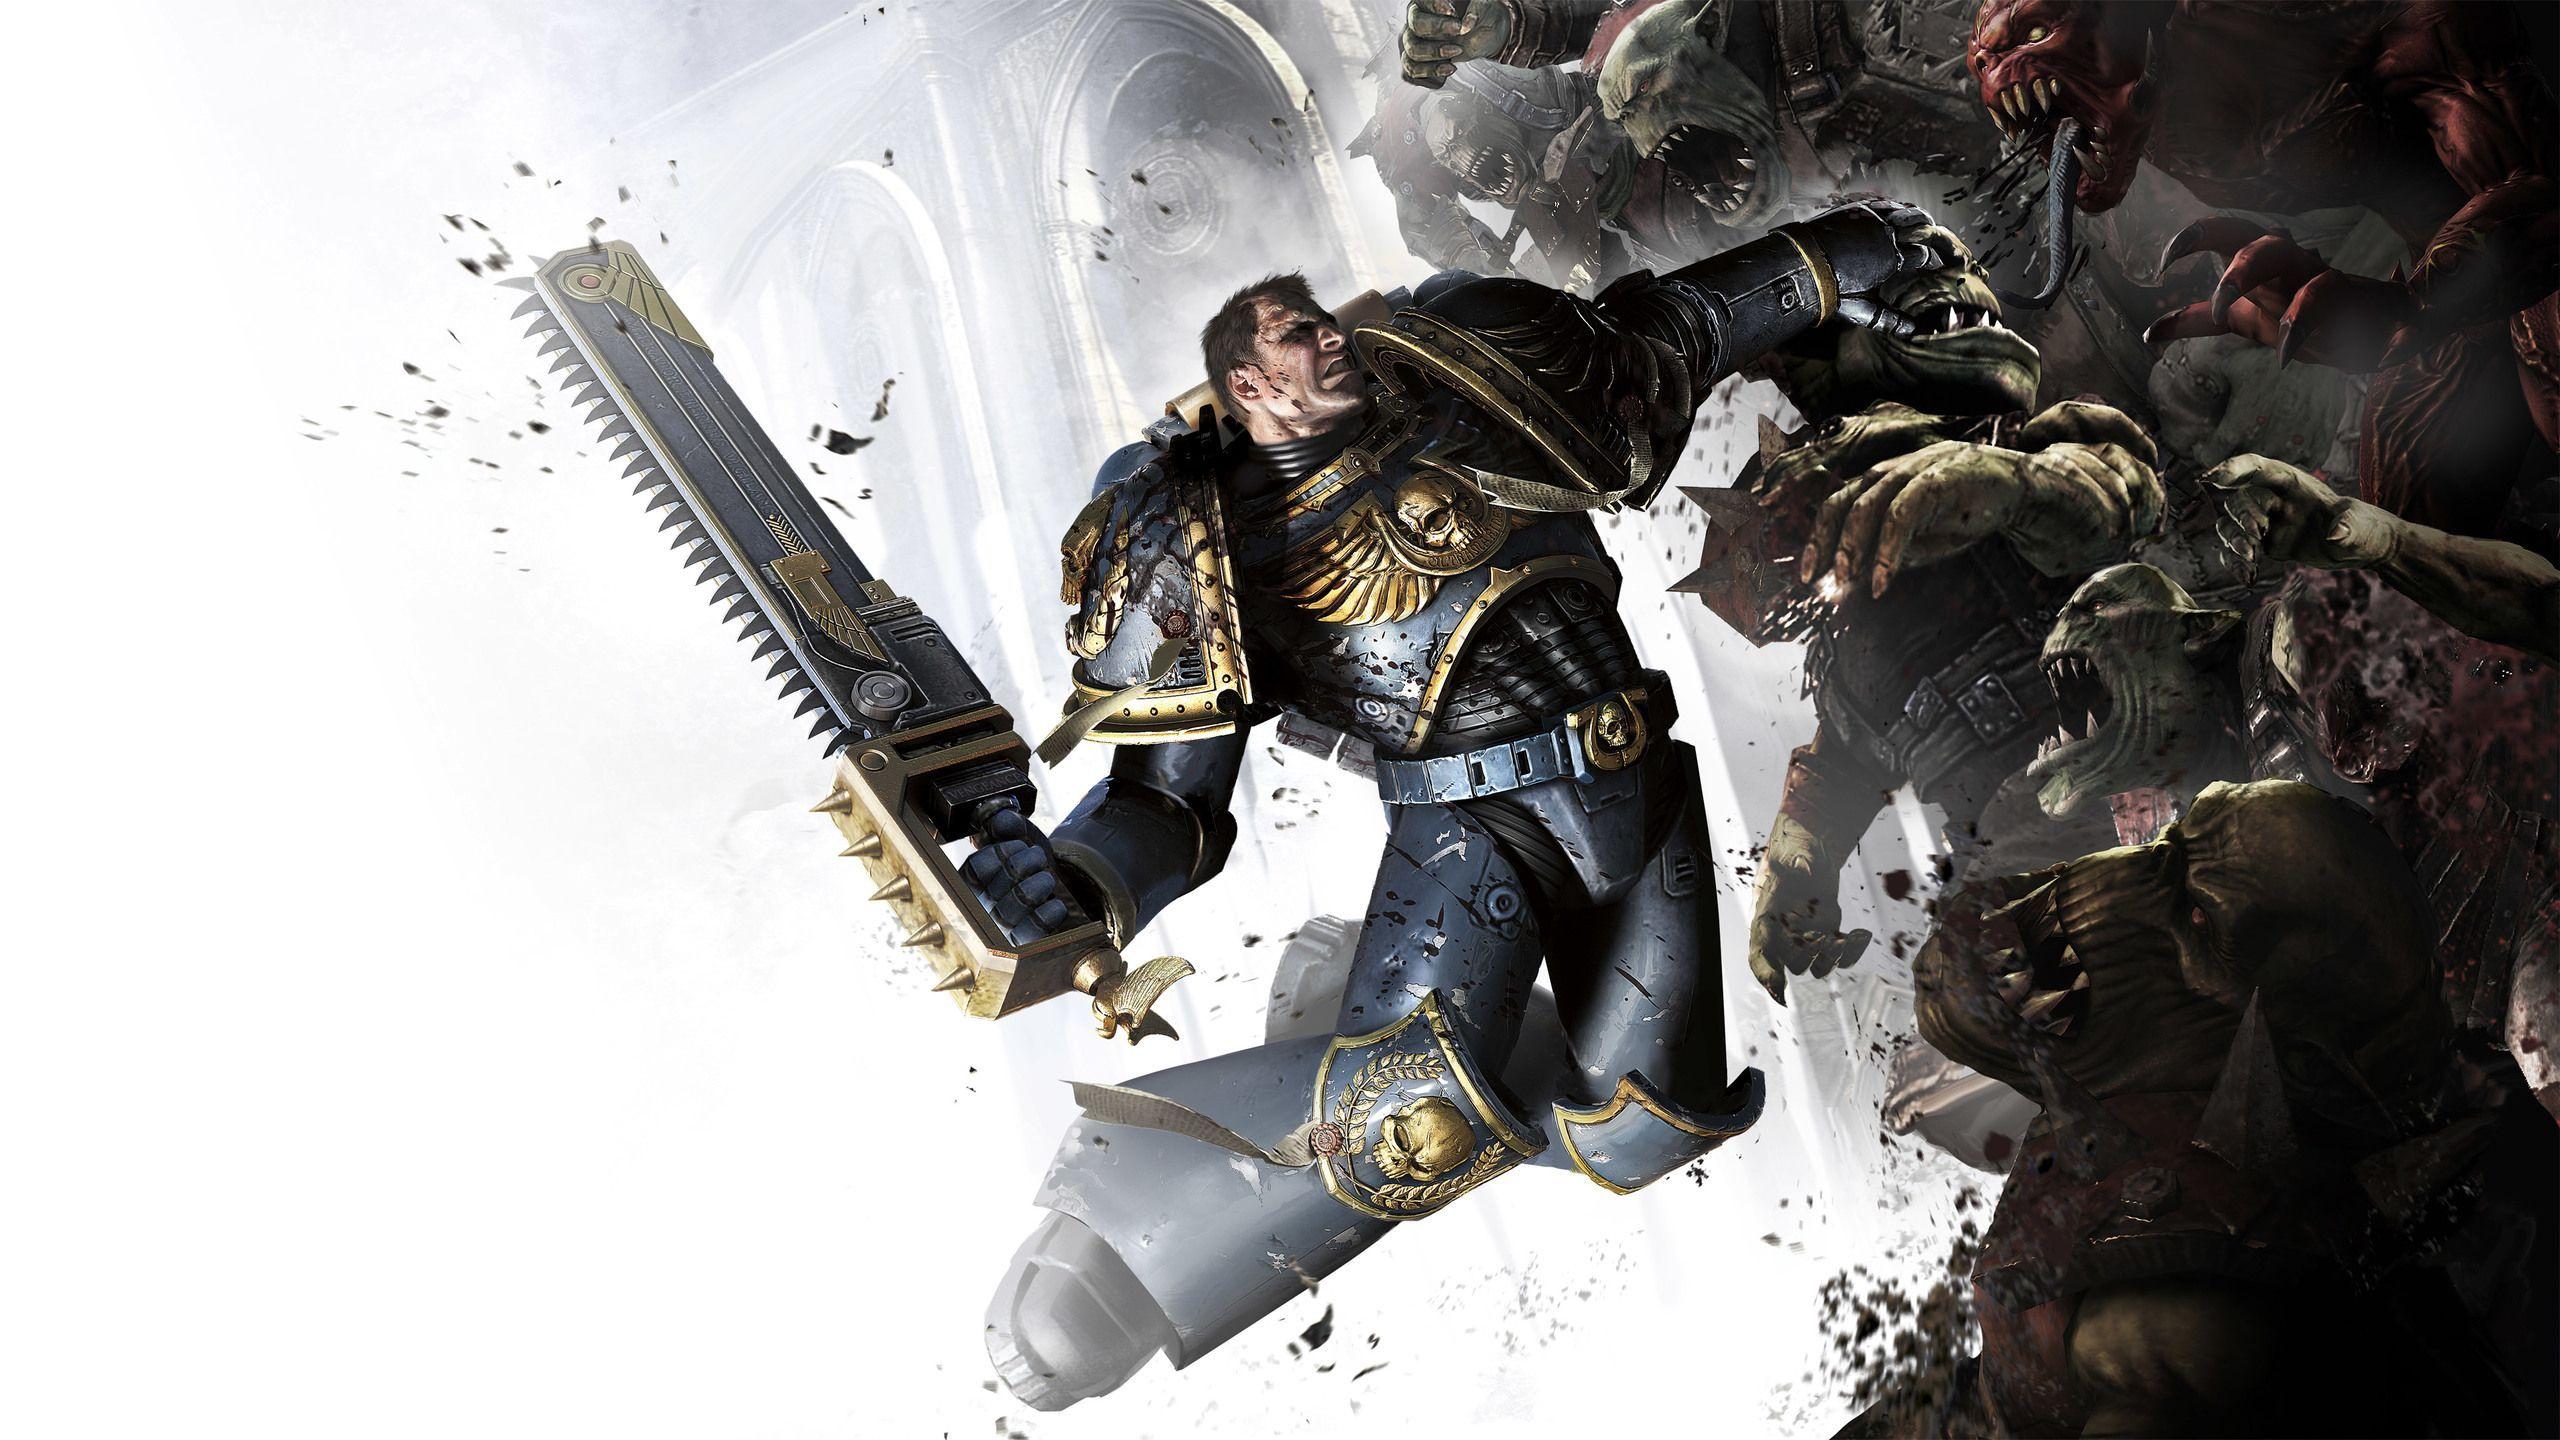 Warhammer 40,000: Space Marine 2 free downloads